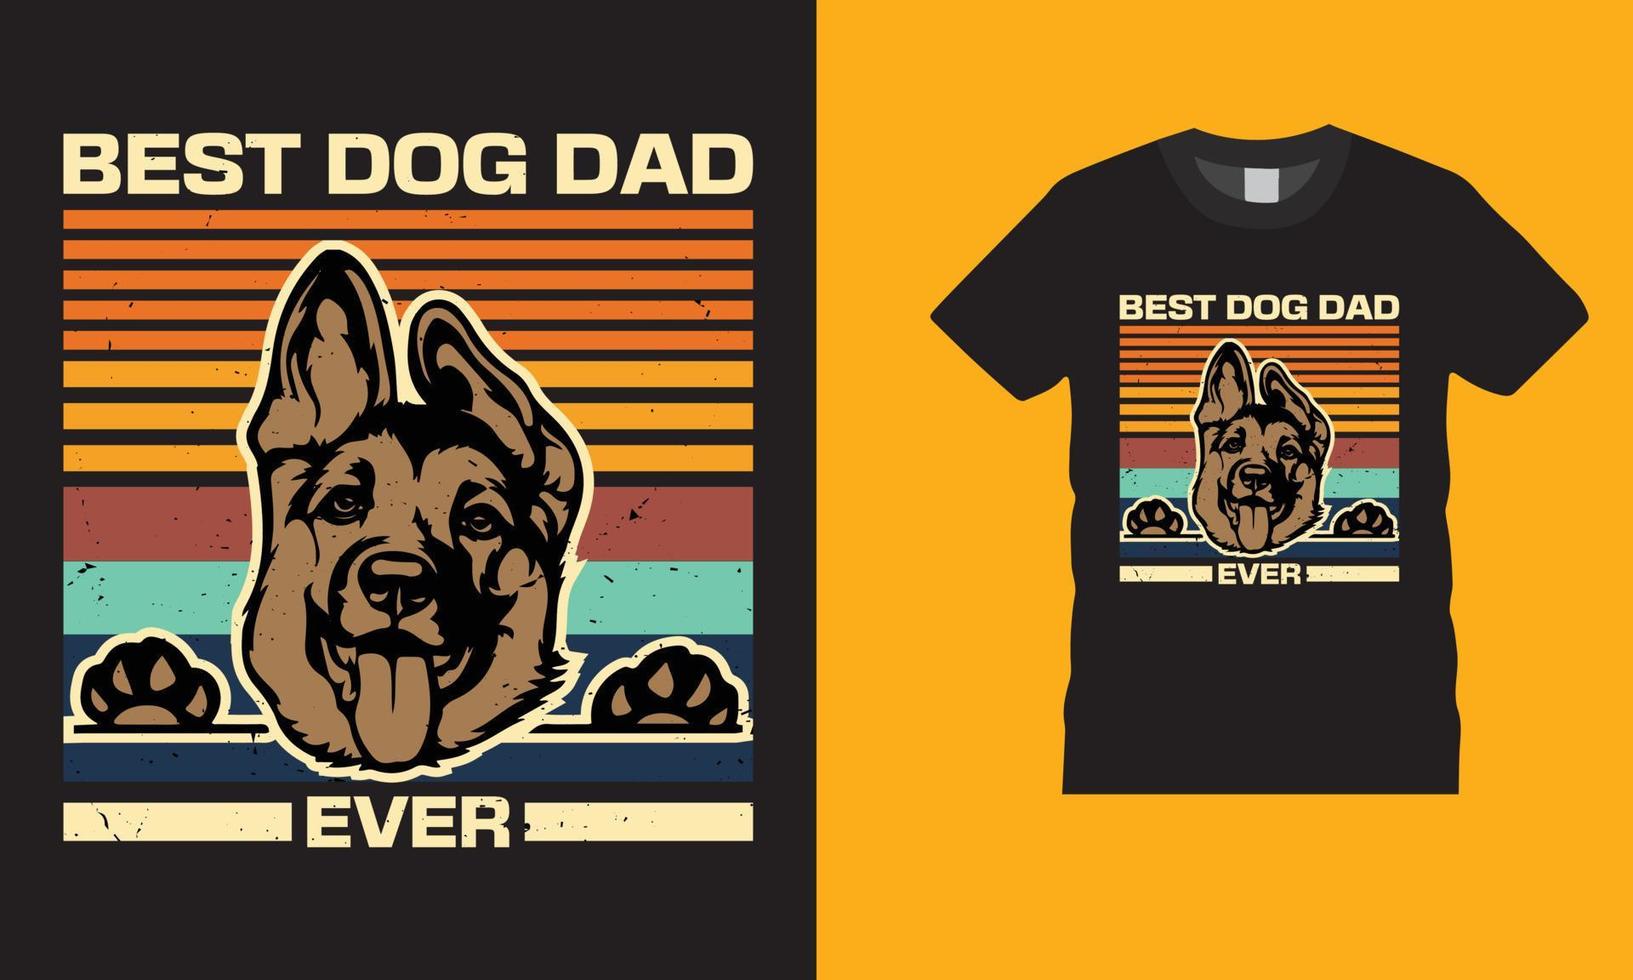 impressionante retrò miglior cane papà mai retrò vintage disegno vettoriale illustrazione stampa t-shirt festa del papà